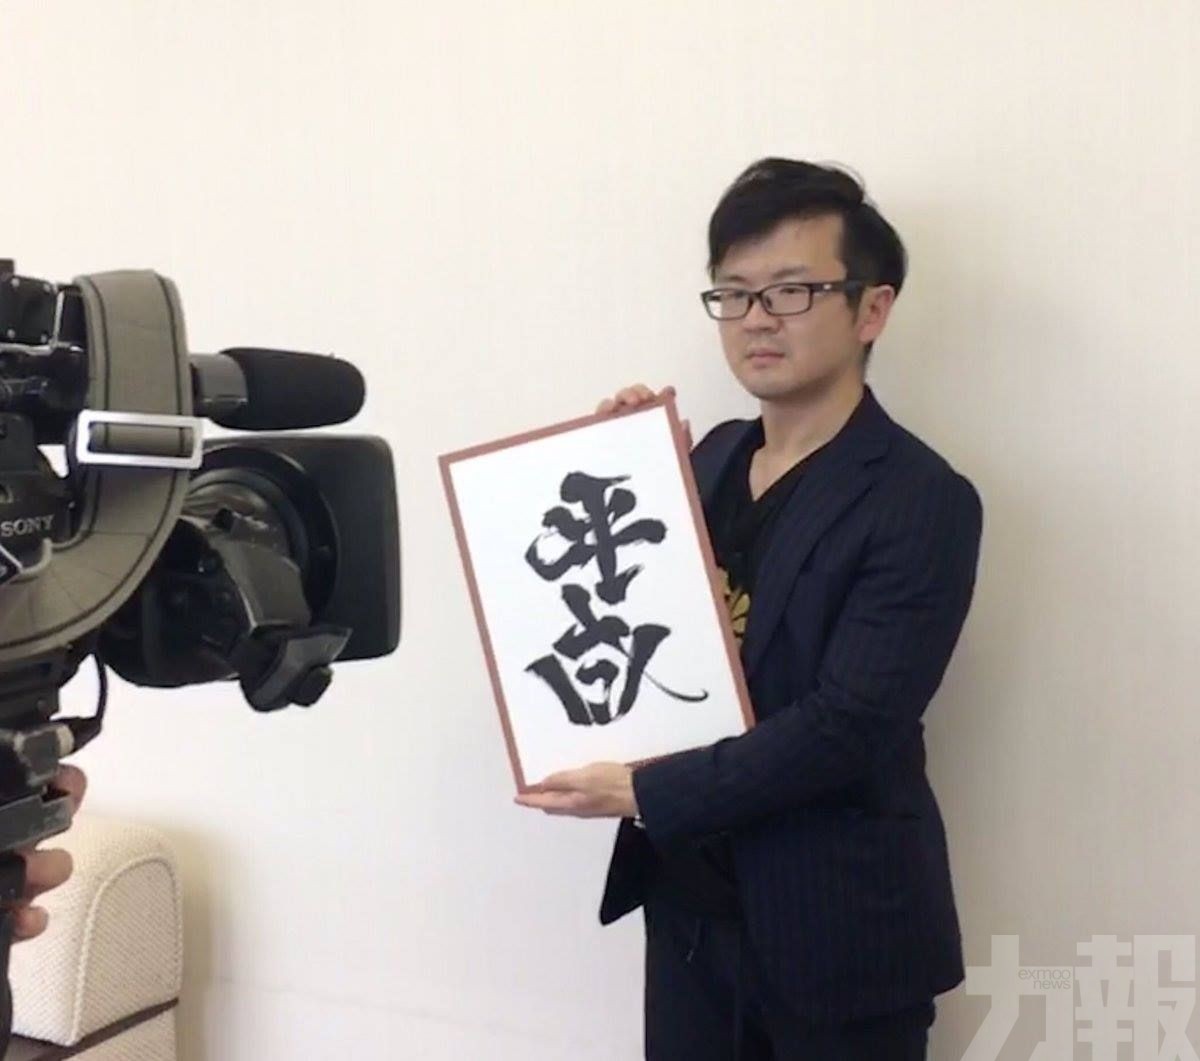 日本藝術家設計「令和」字體